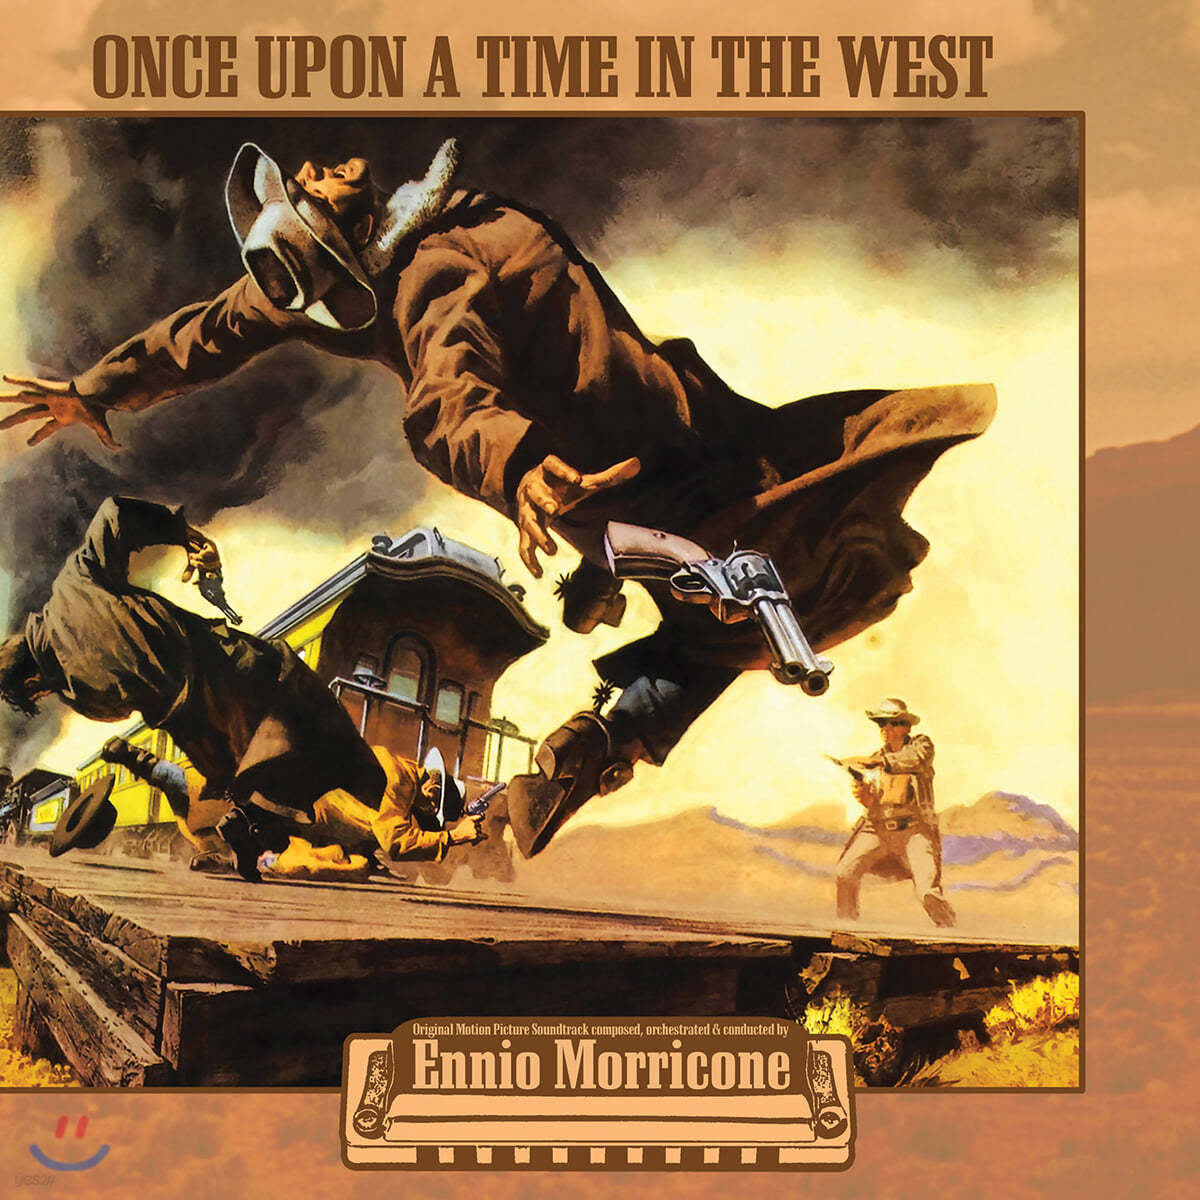 원스 어폰 어 타임 인 더 웨스트 영화음악 (Once Upon a Time in the West OST by Ennio Morricone 엔니오 모리꼬네) [컬러 LP] 